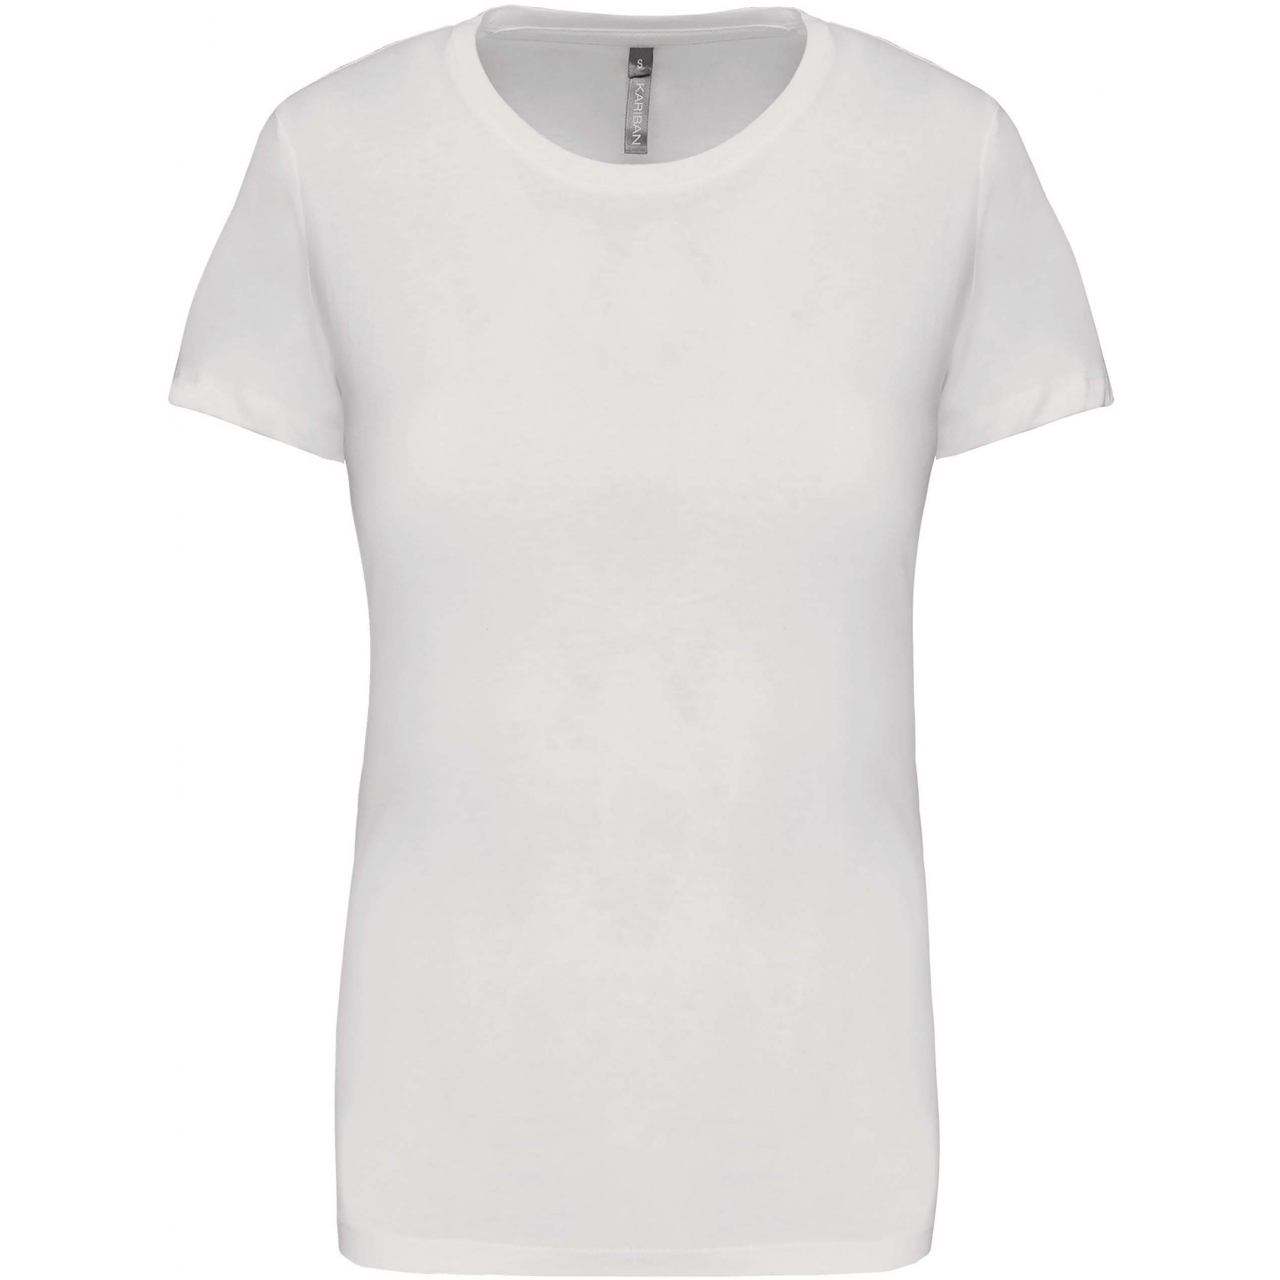 Dámské tričko Kariban s krátkým rukávem - bílé, L